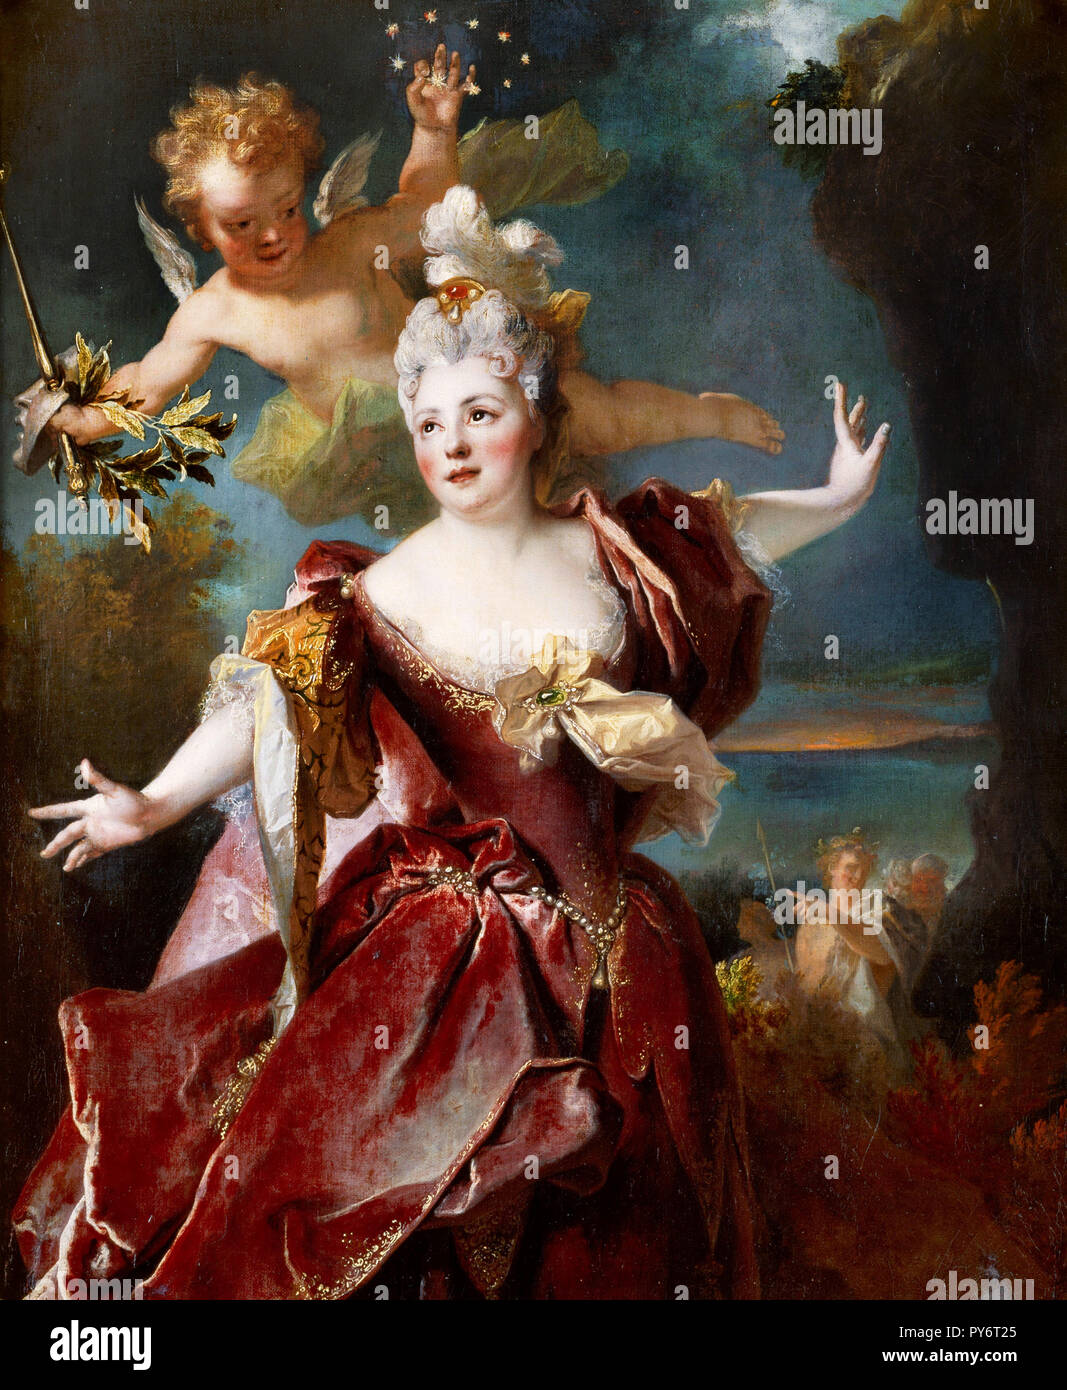 Nicolas de Largilliere, Ritratto di attrice Marie-Anne de Chateauneuf, noto come Miss Duclos (1664-1747), come Ariane, circa 1712 olio su tela, Conde Museum, Chantilly, Francia. Foto Stock